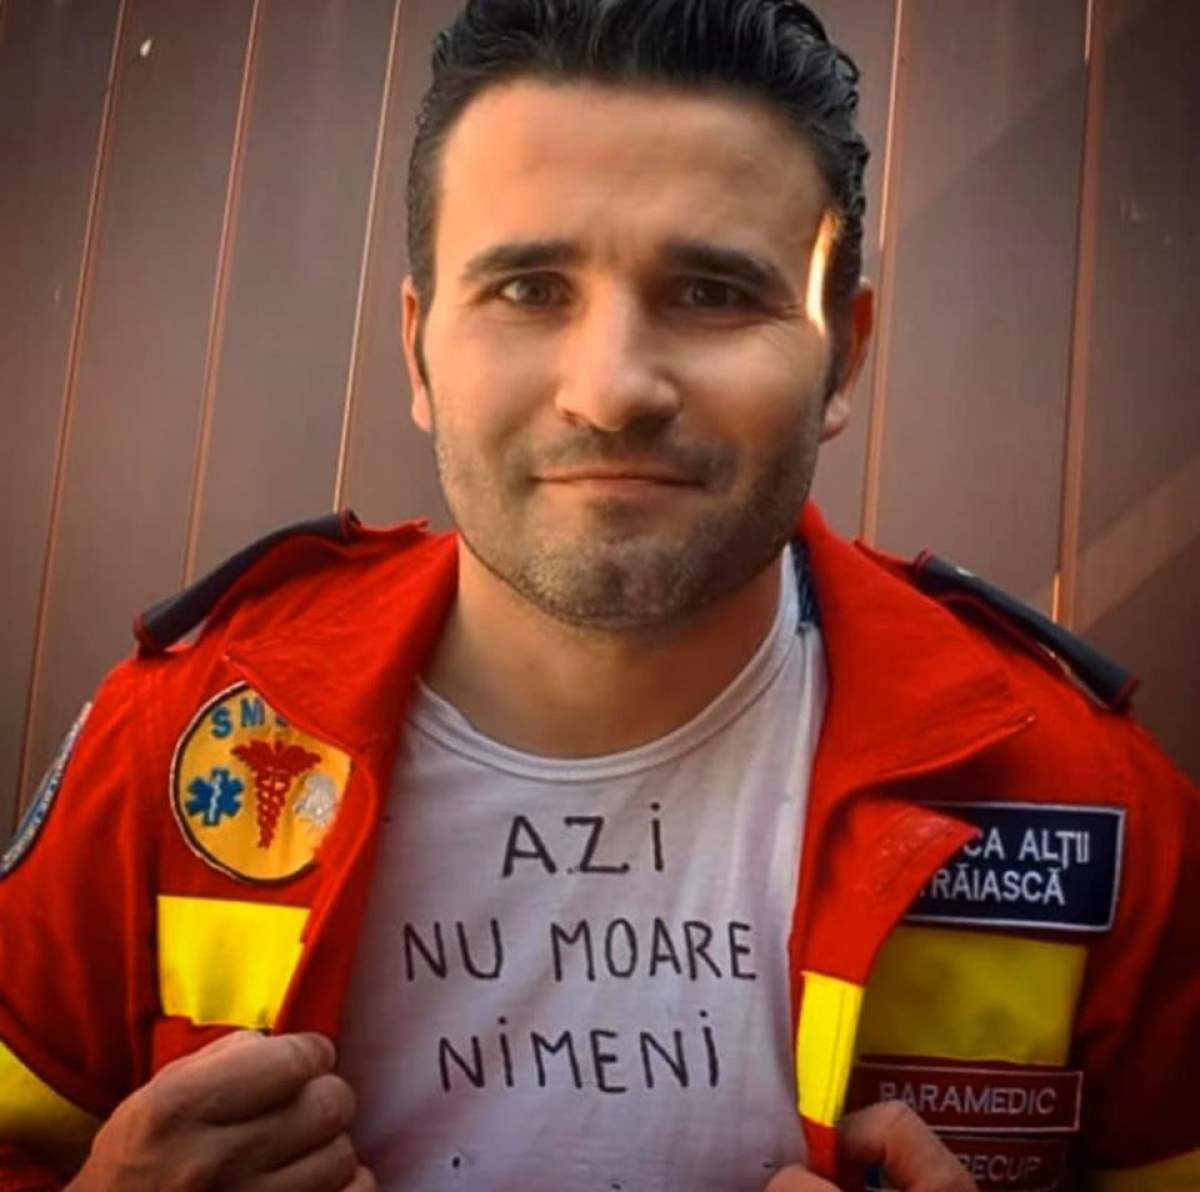 Cosmin este paramedicul care le dă curaj pacienților, printr-un mesaj scris pe tricou. „Azi nu moare nimeni”